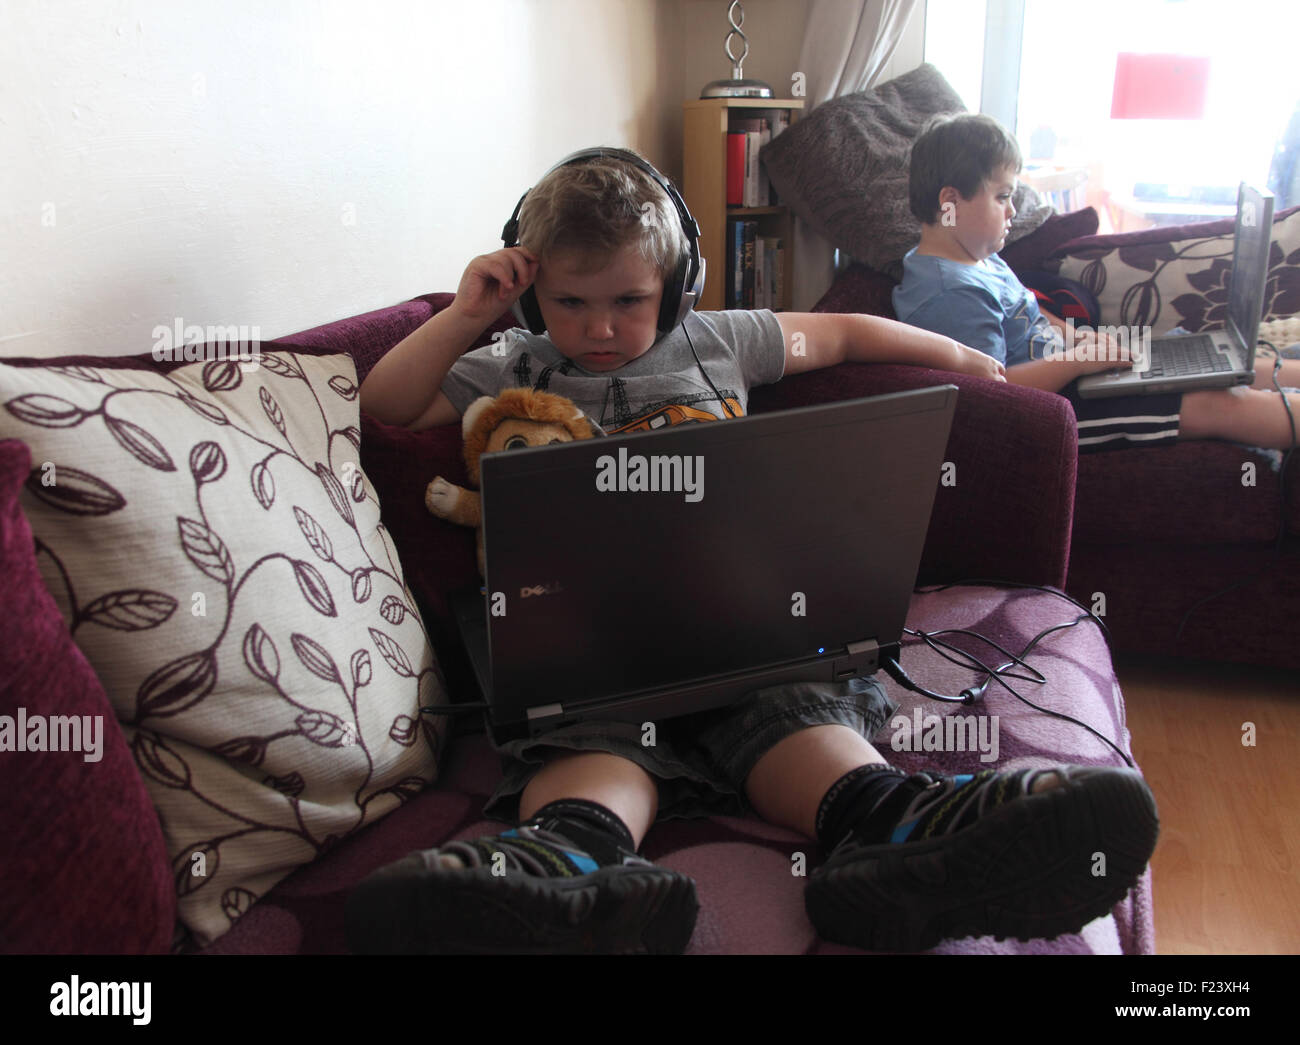 Les jeunes garçons à l'aide d'ordinateurs portables Banque D'Images